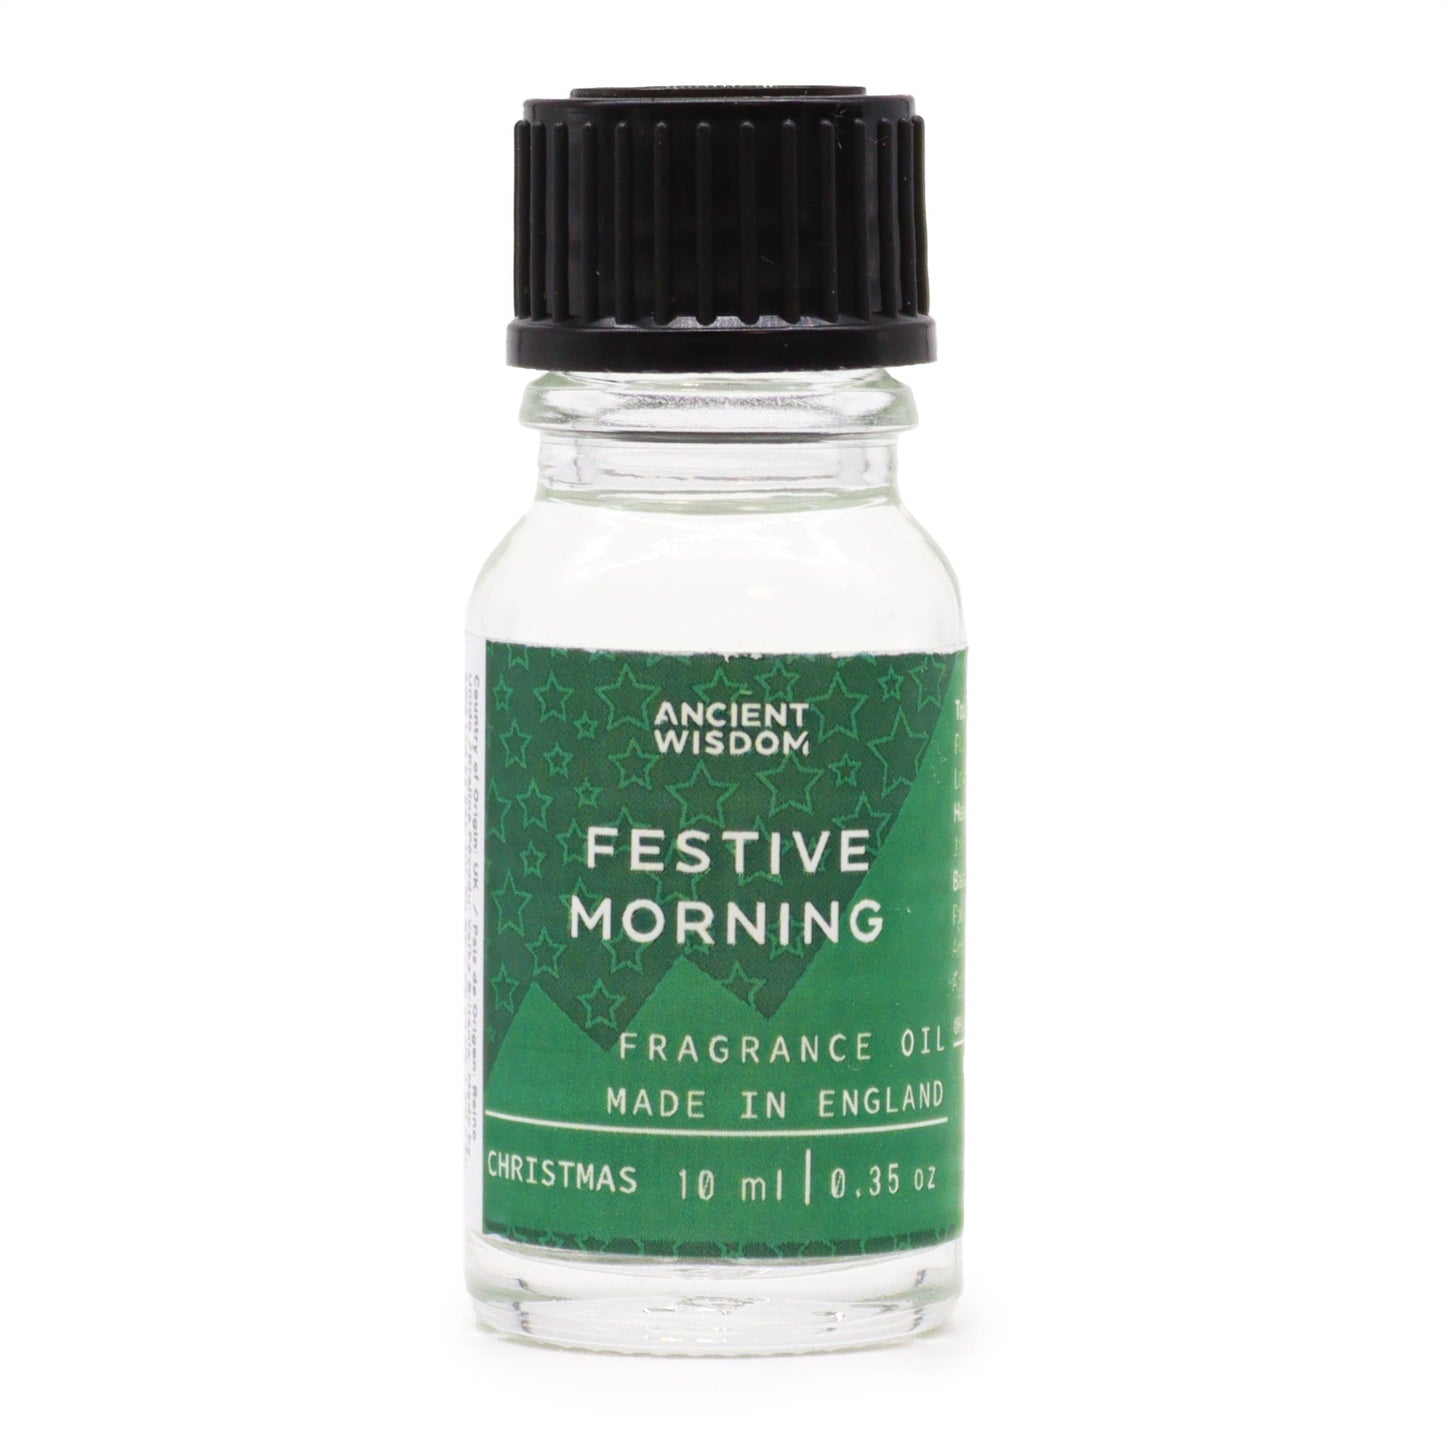 Festive Morning Fragrance Oil 10ml